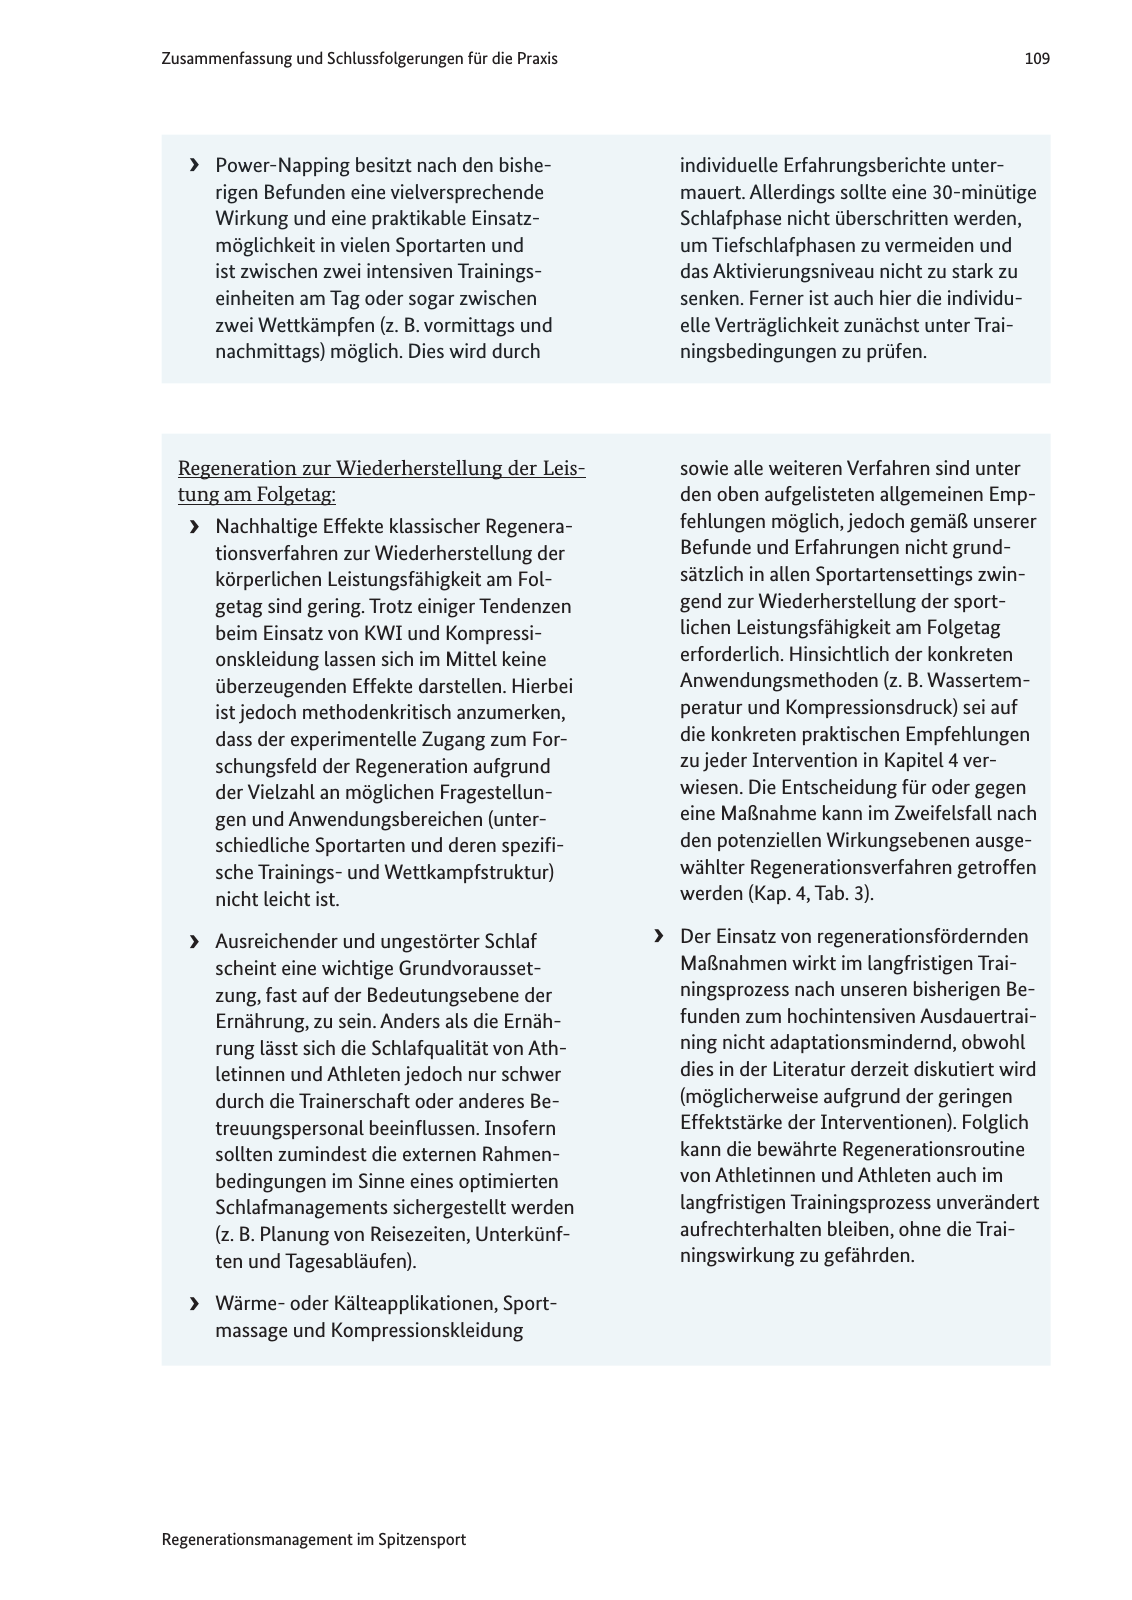 Vorschau Handreichung Regmann / Regenerationsmanagement im Spitzensport Seite 110